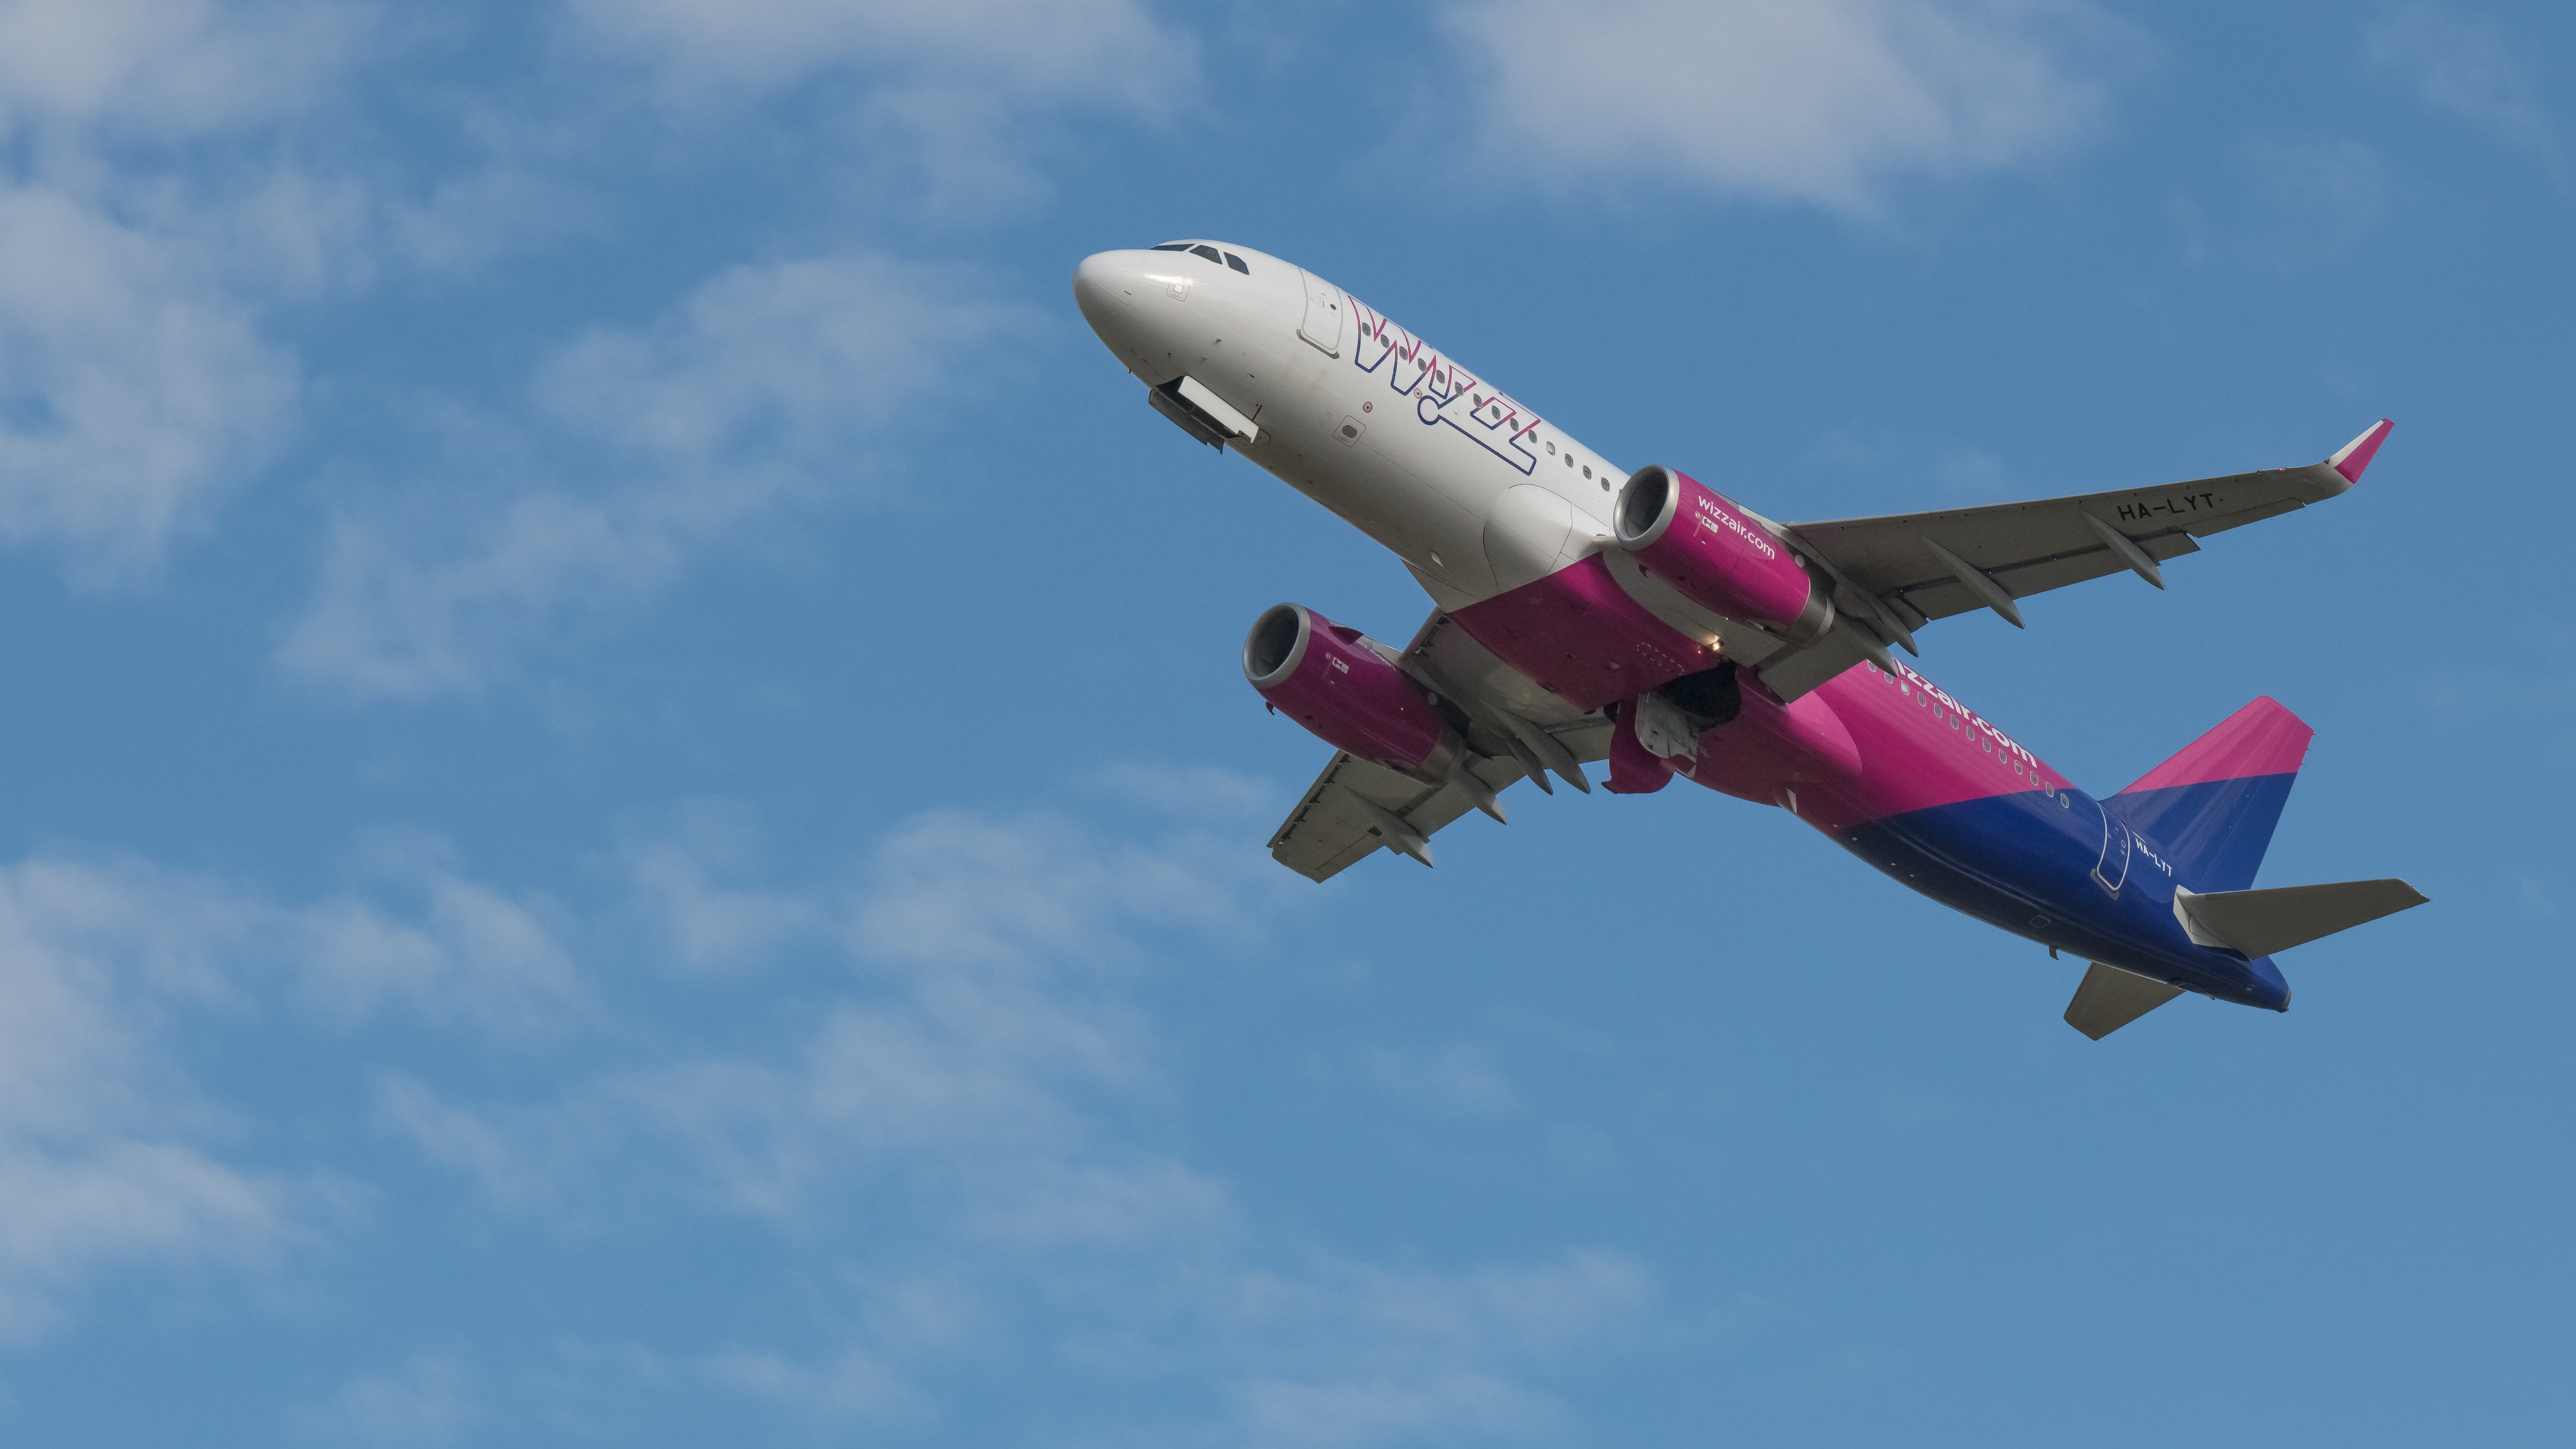 Bolgár-magyar: a Wizz Air törli a szurkoló járatait